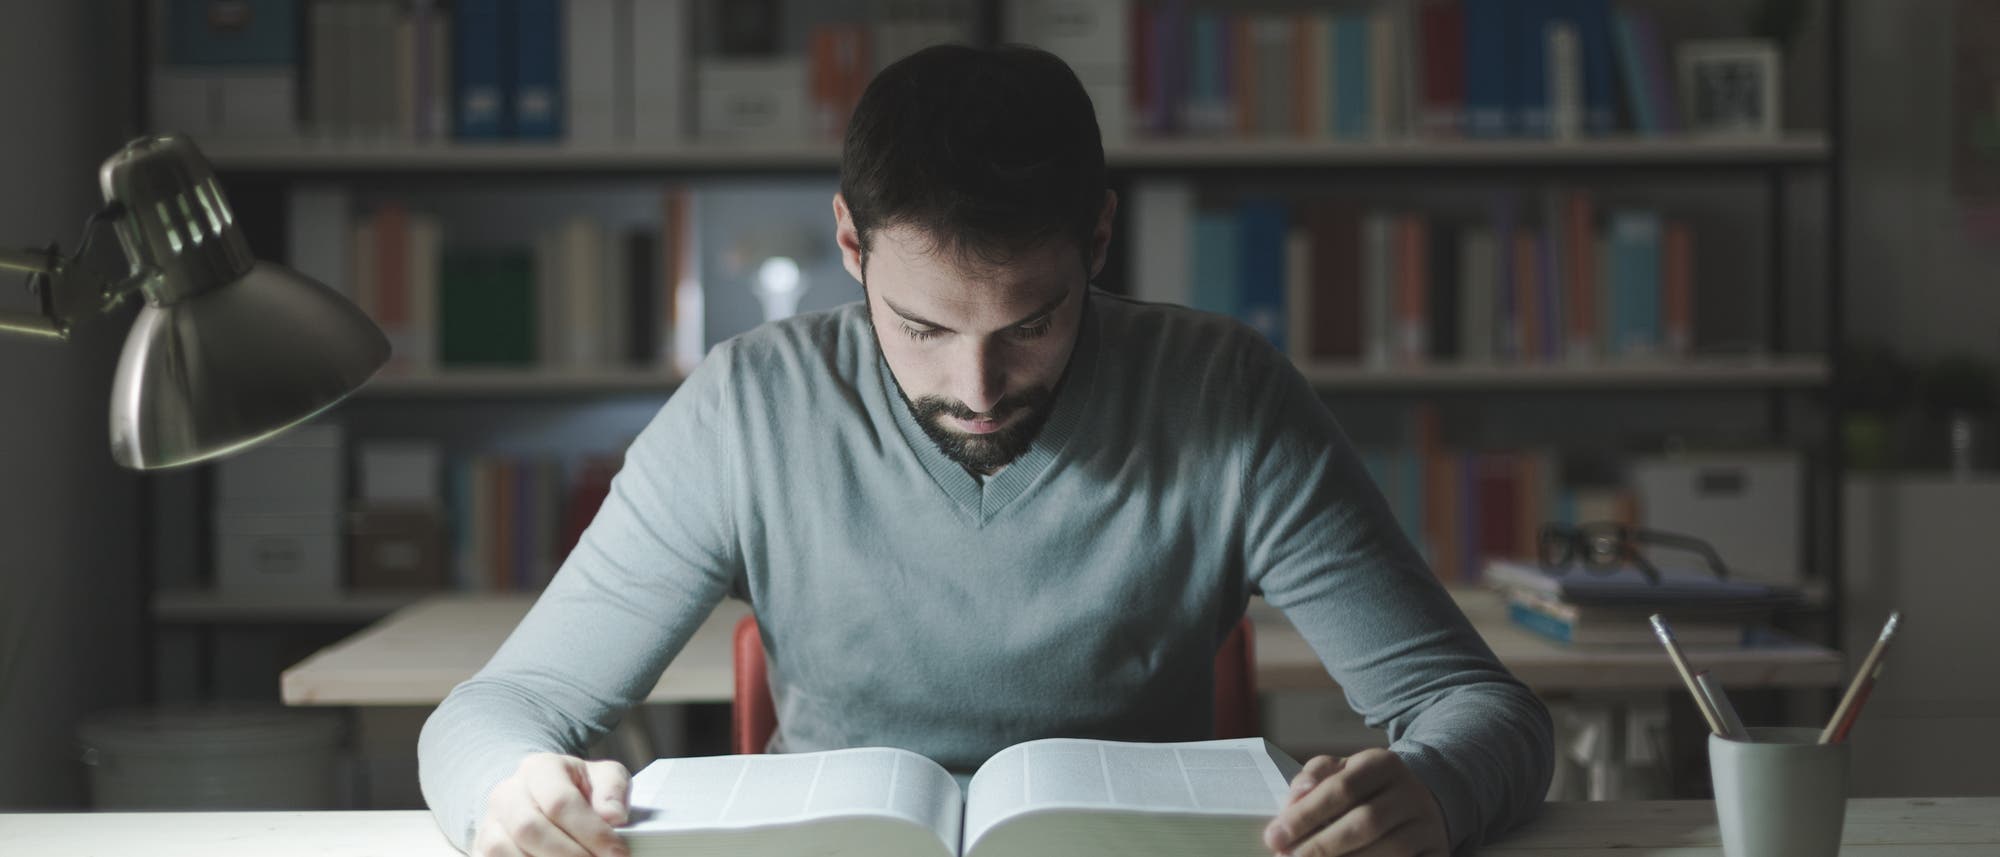 Ein Mann blickt konzentriert in ein dickes Buch. Hinter ihm steht ein Bücherregal. Eine Schreibtischlampe beleuchtet das Buch.